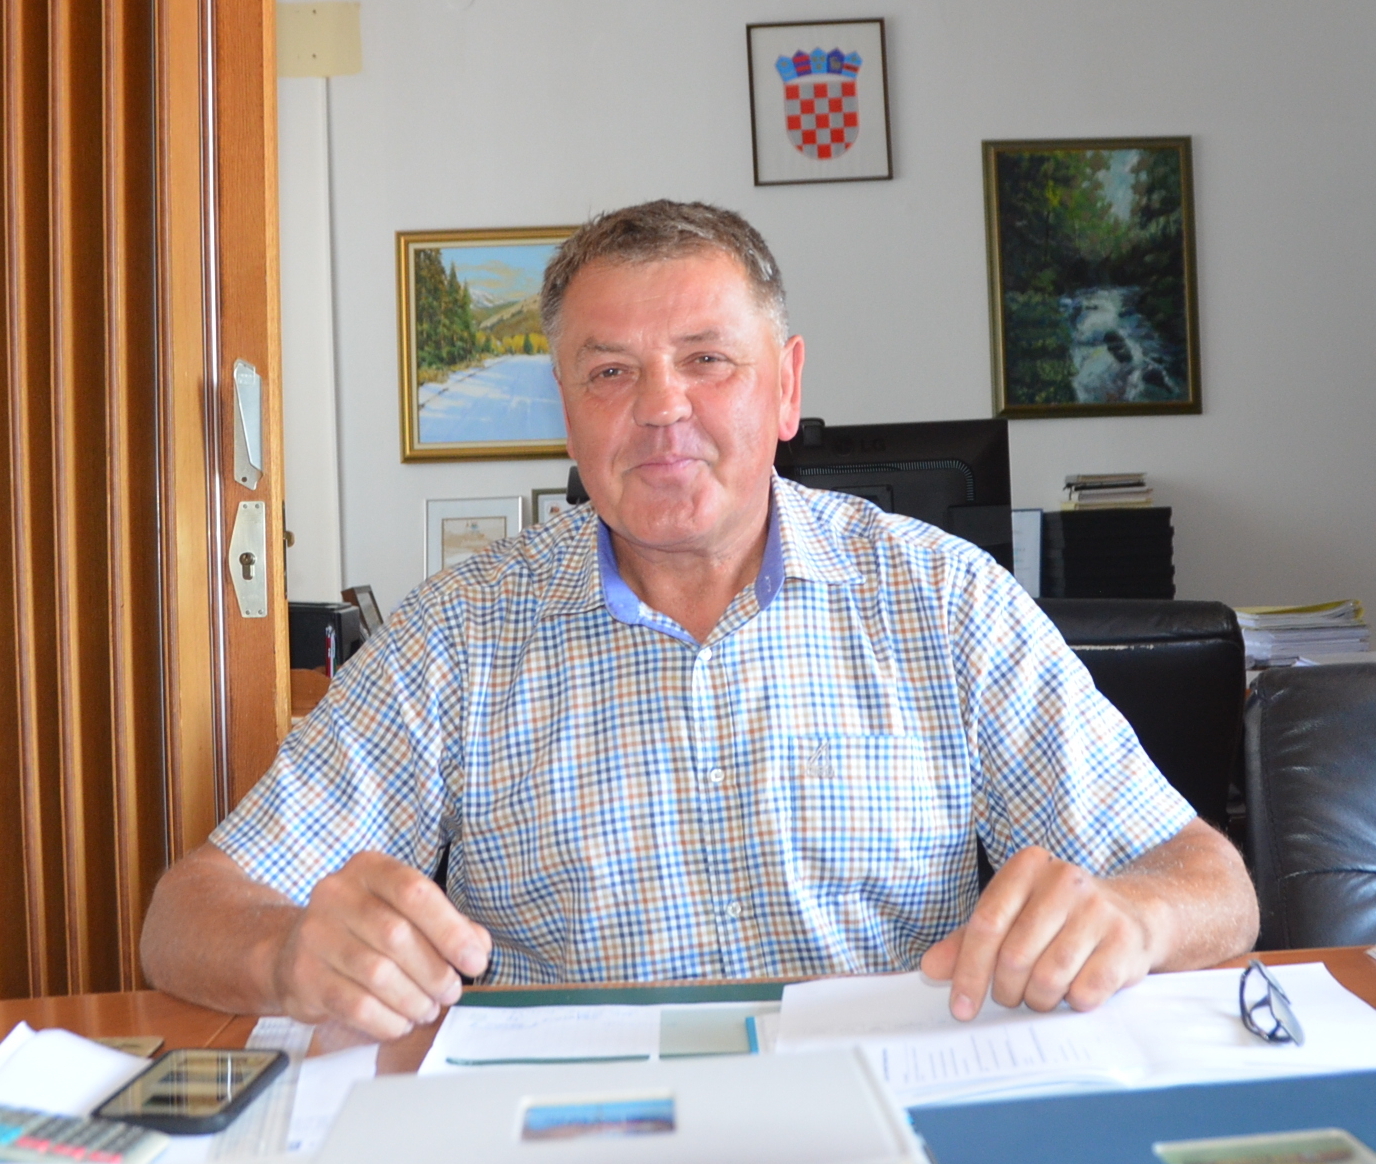 Dražen Mufić, gradonačelnik Vrbovskog, i dalje ne vjeruje u dobre namjere SDSS-a